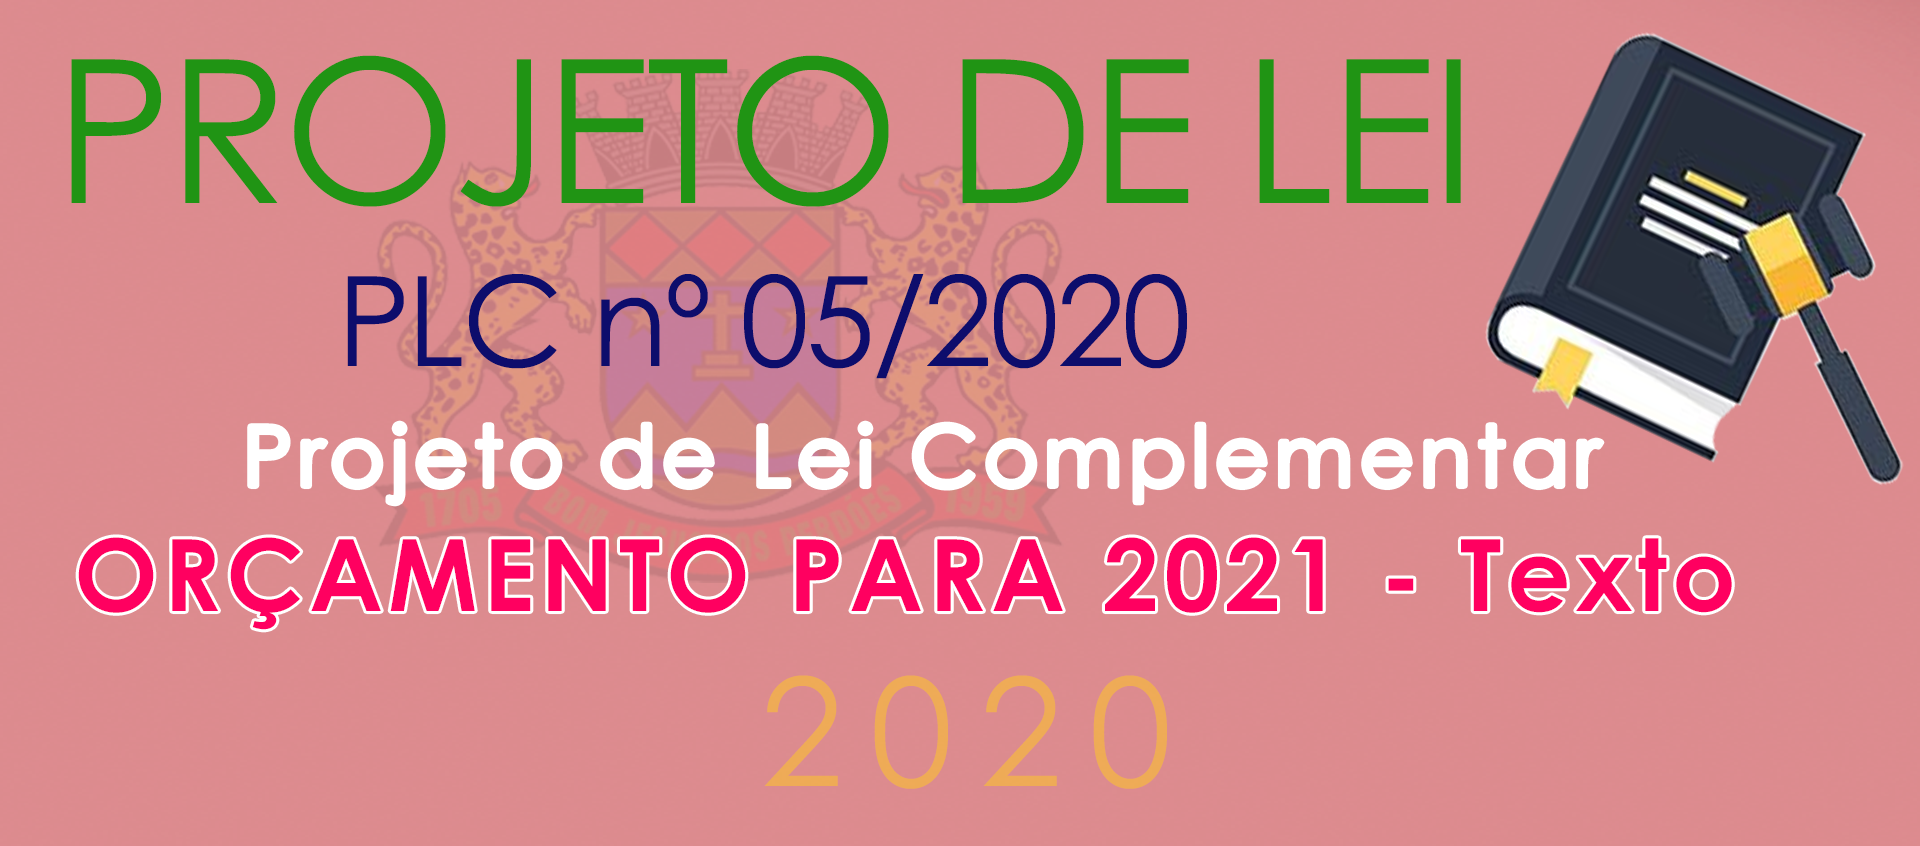 PLC nº 05/2020 - Projeto de Lei Orçamentária para 2021